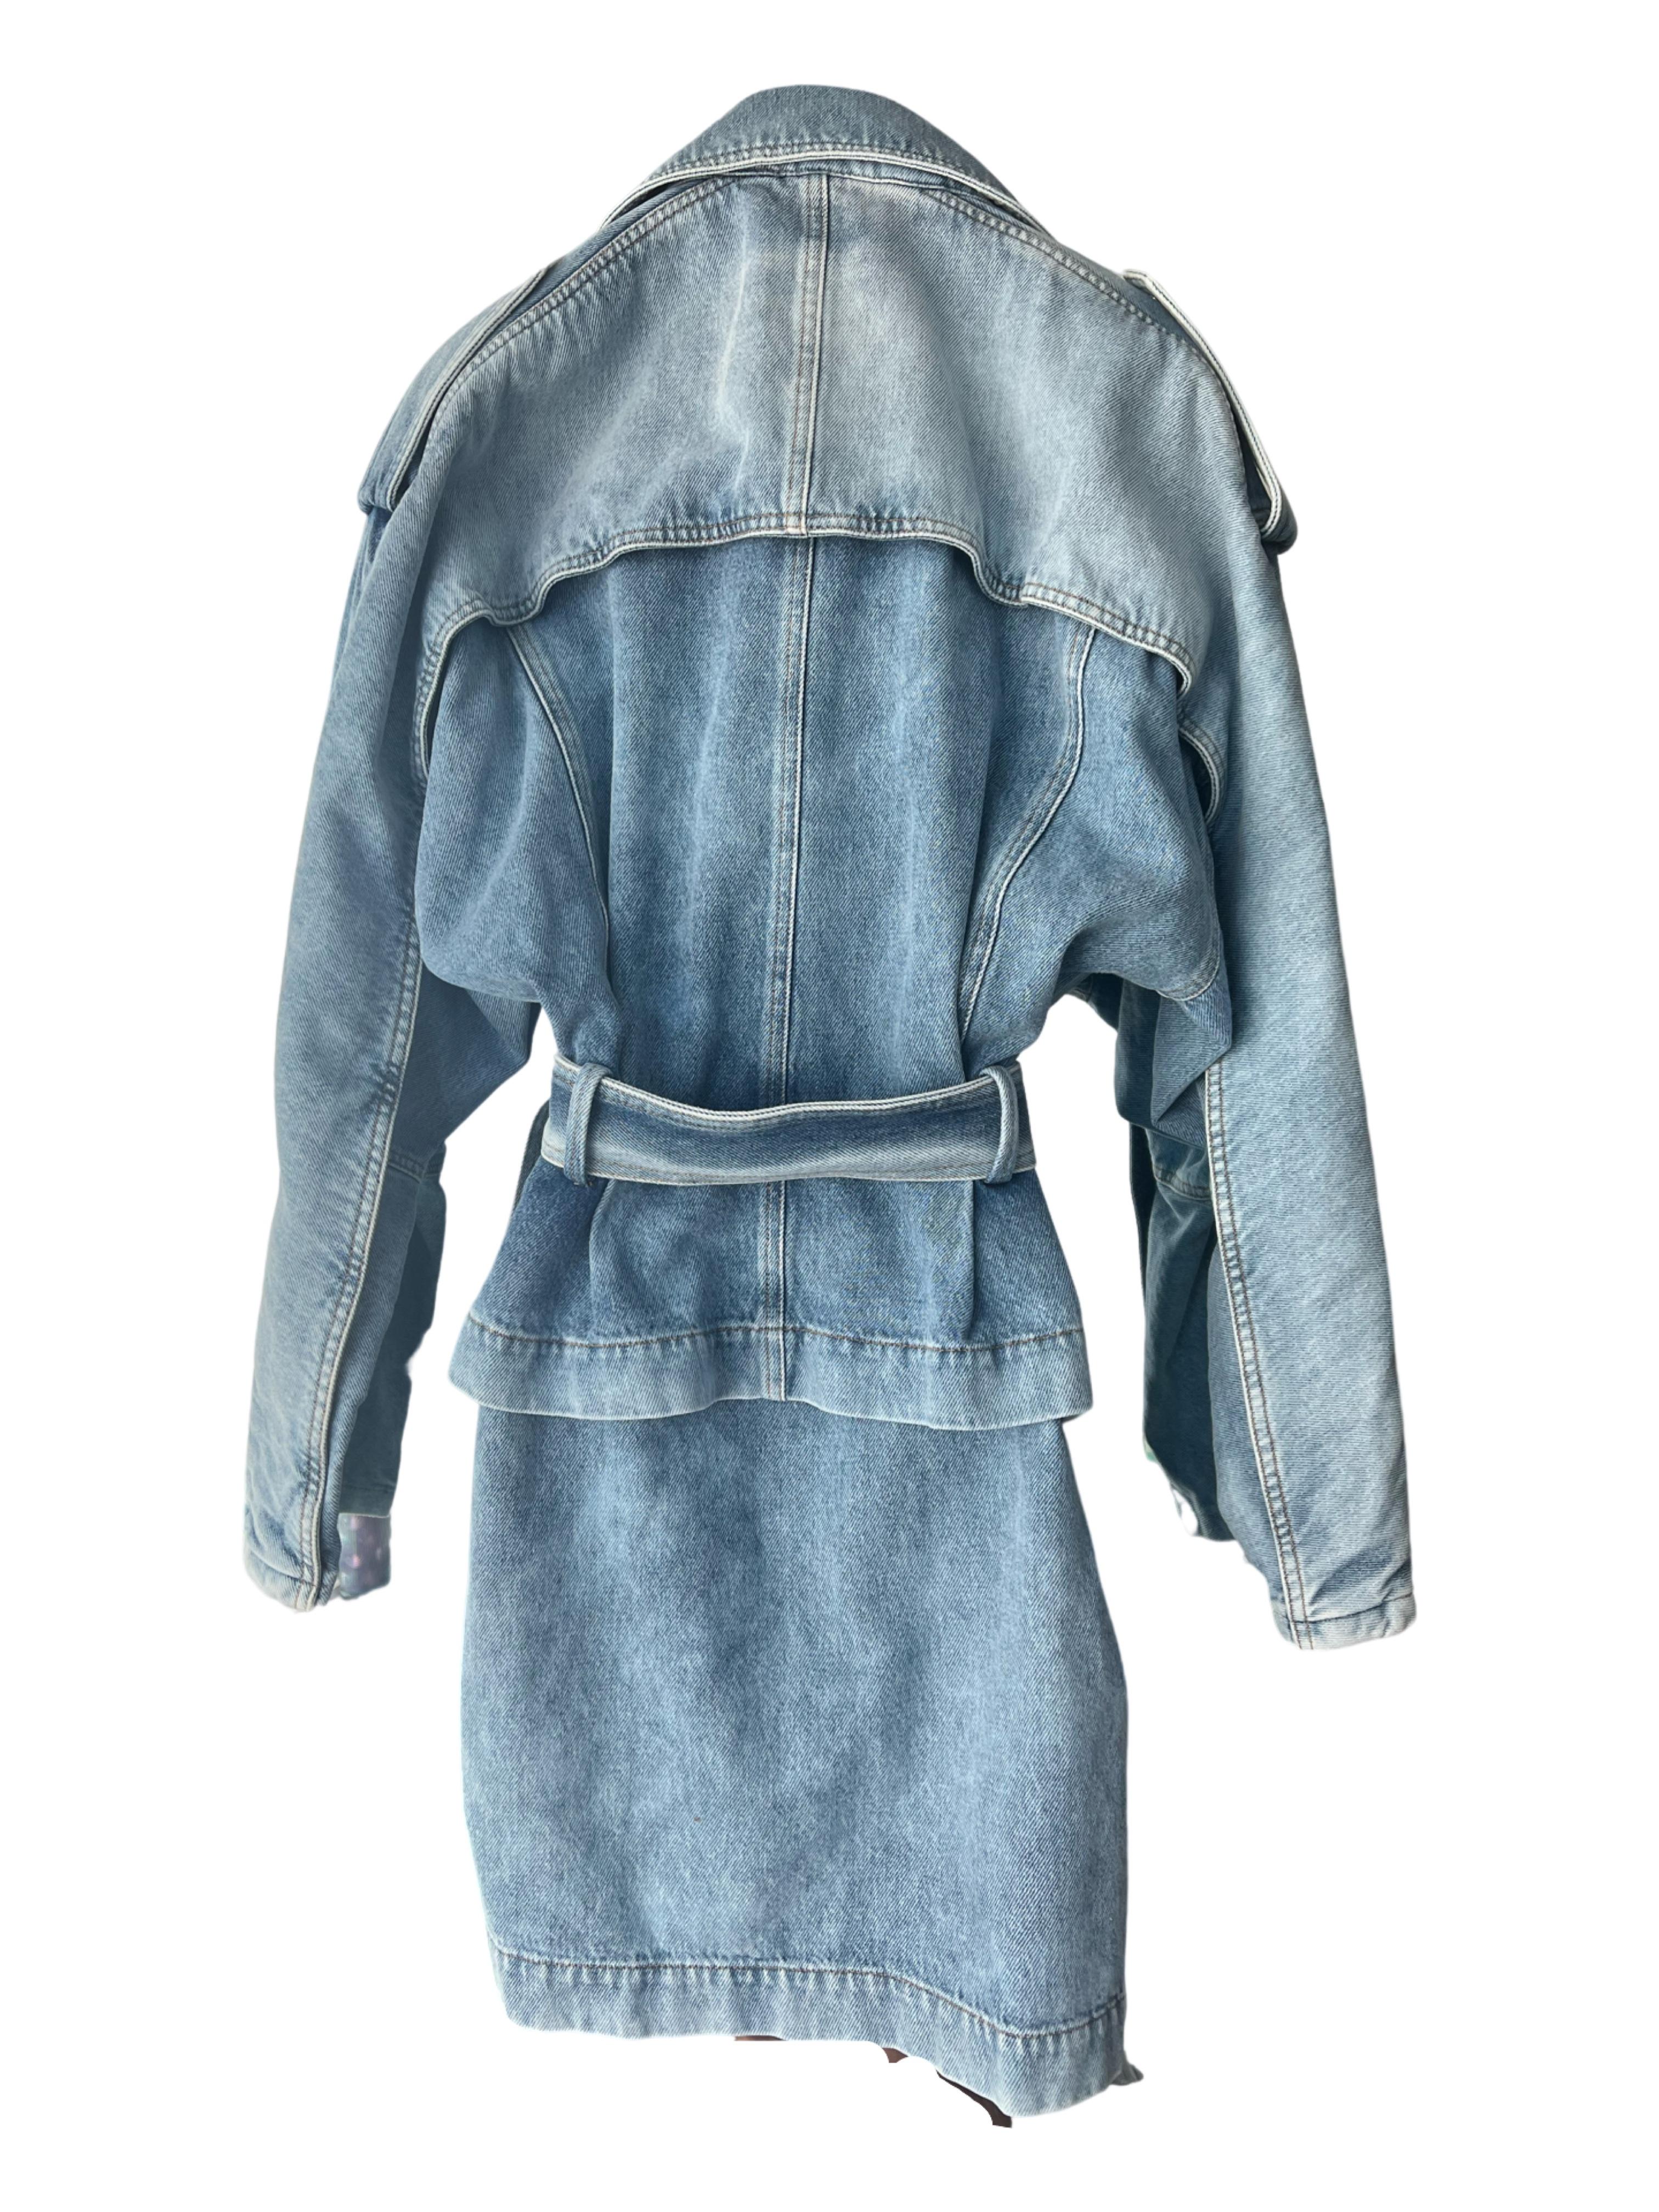 Das von den 70er Jahren inspirierte Jeanskleid von Alexander Vauthier ist eine modische Retro-Hommage an die ikonische Modezeit der 1970er Jahre. Dieses Jeanskleid ist für seinen kühnen und unverwechselbaren Stil bekannt und fängt die Essenz dieser